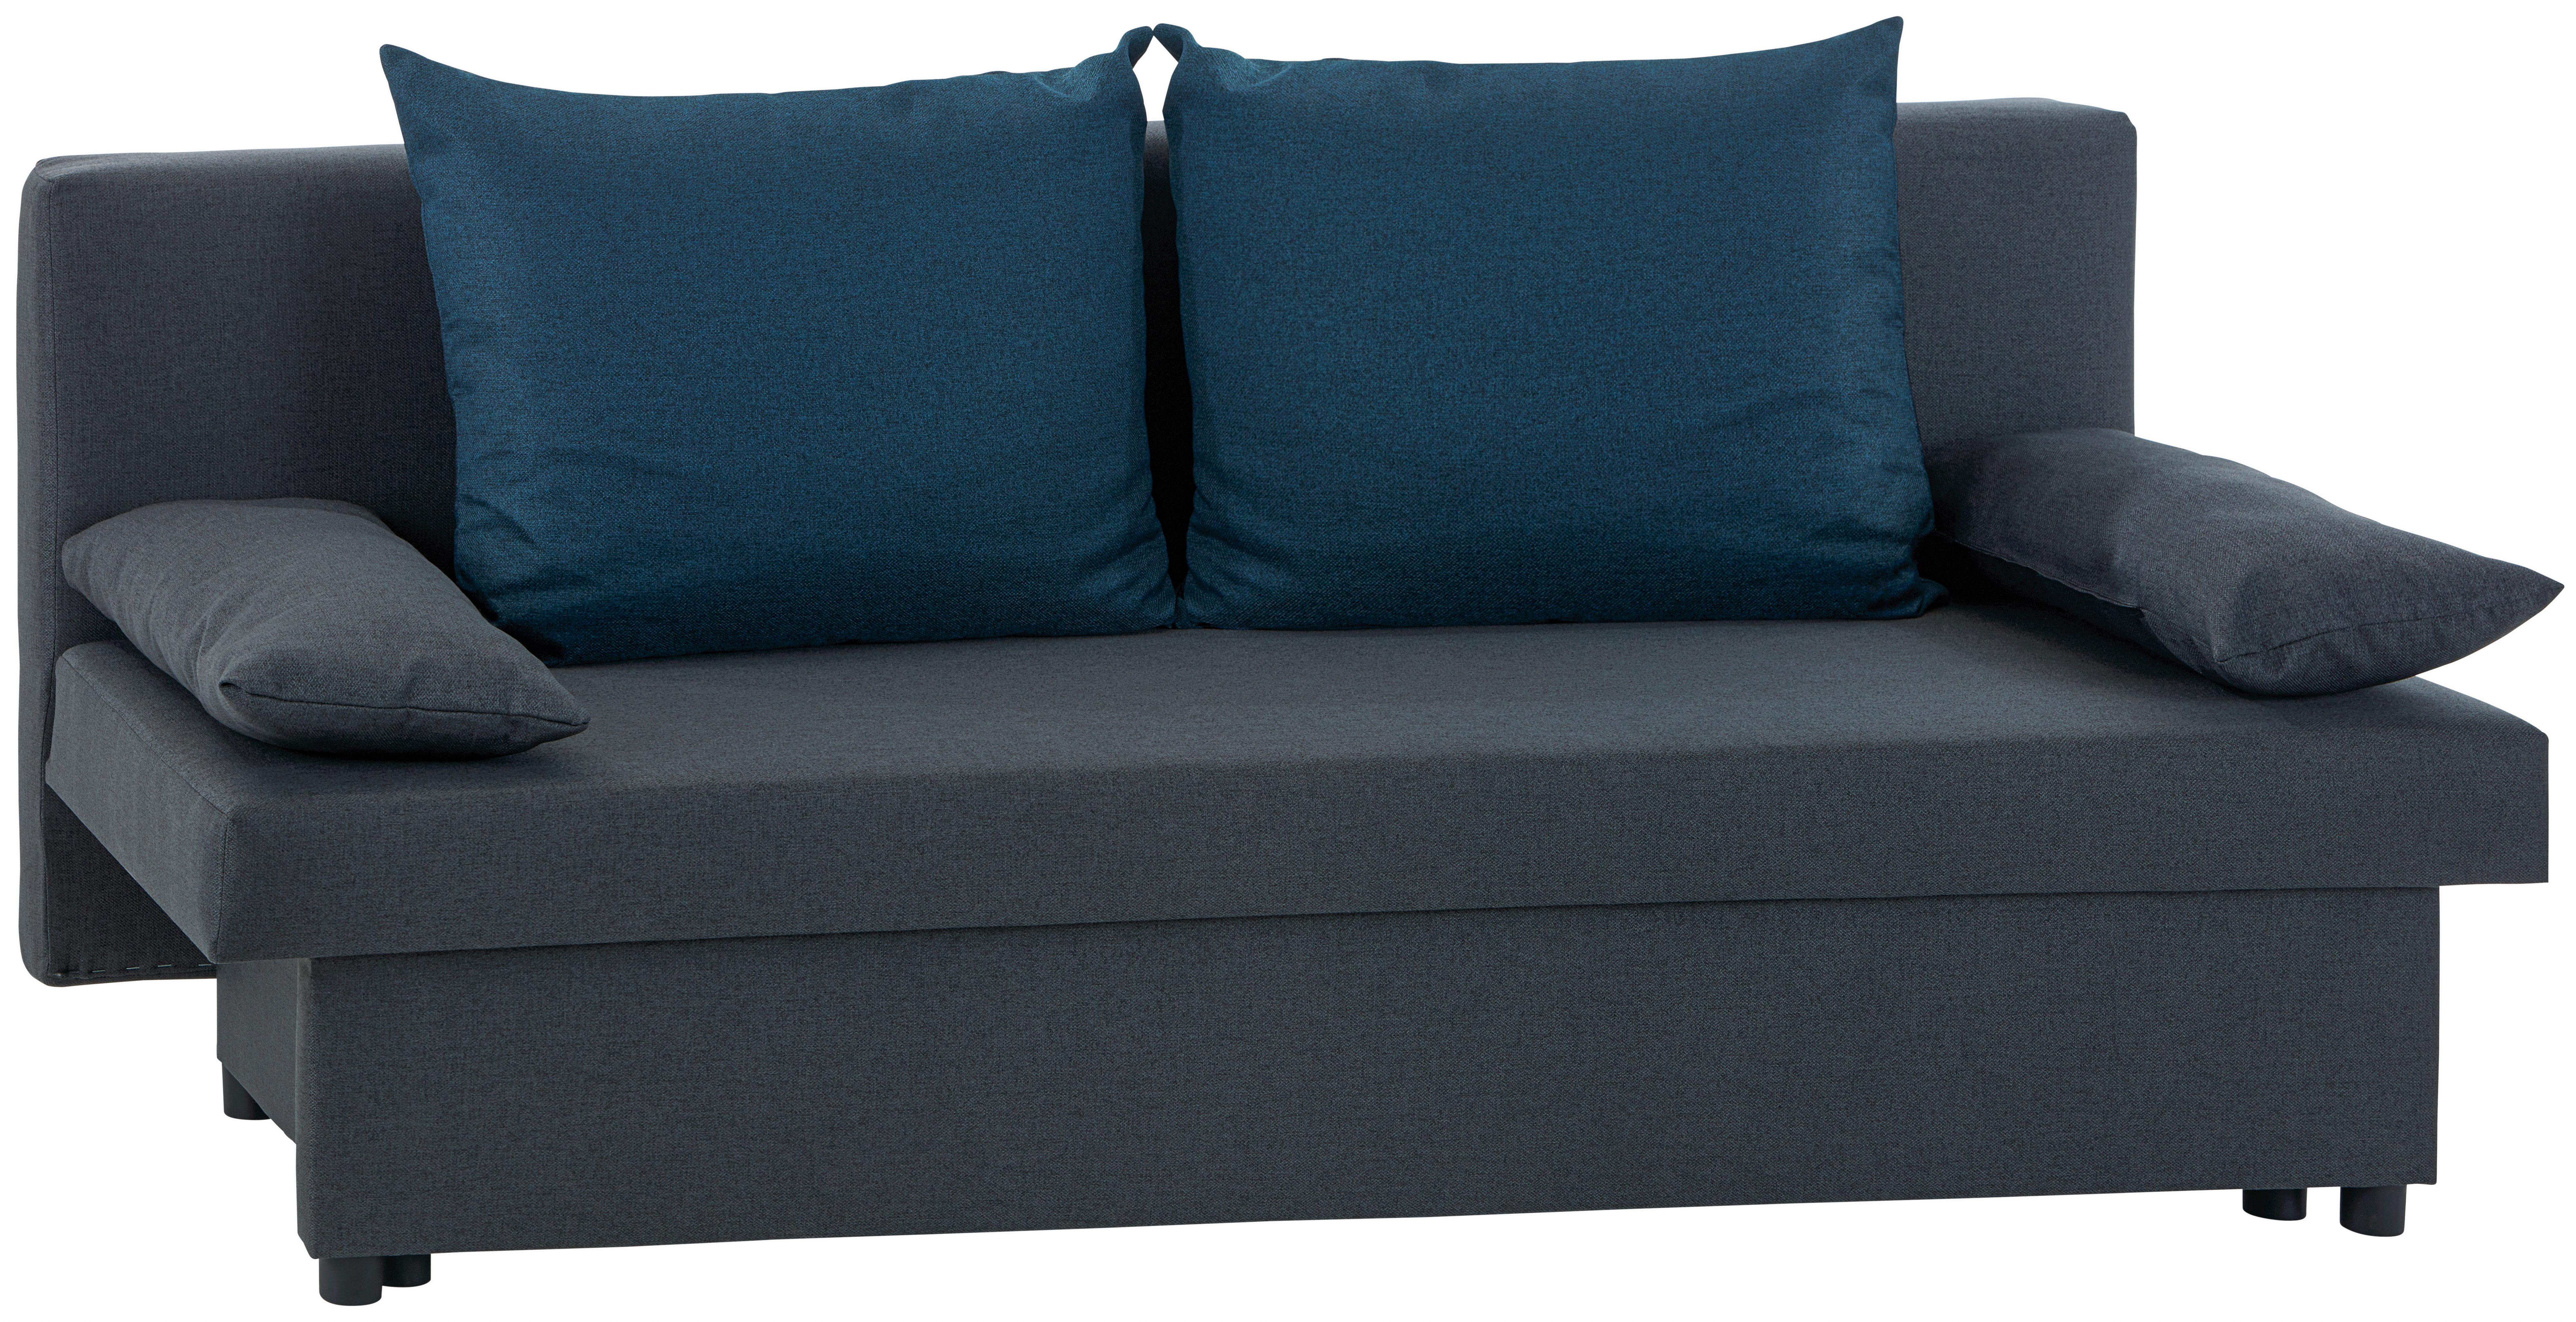 2-Sitzer-Sofa mit Schlaffunkt. und Bettkasten Neo + Kissen Grau - Blau/Dunkelgrau, Basics, Karton/Holz (192/82cm)